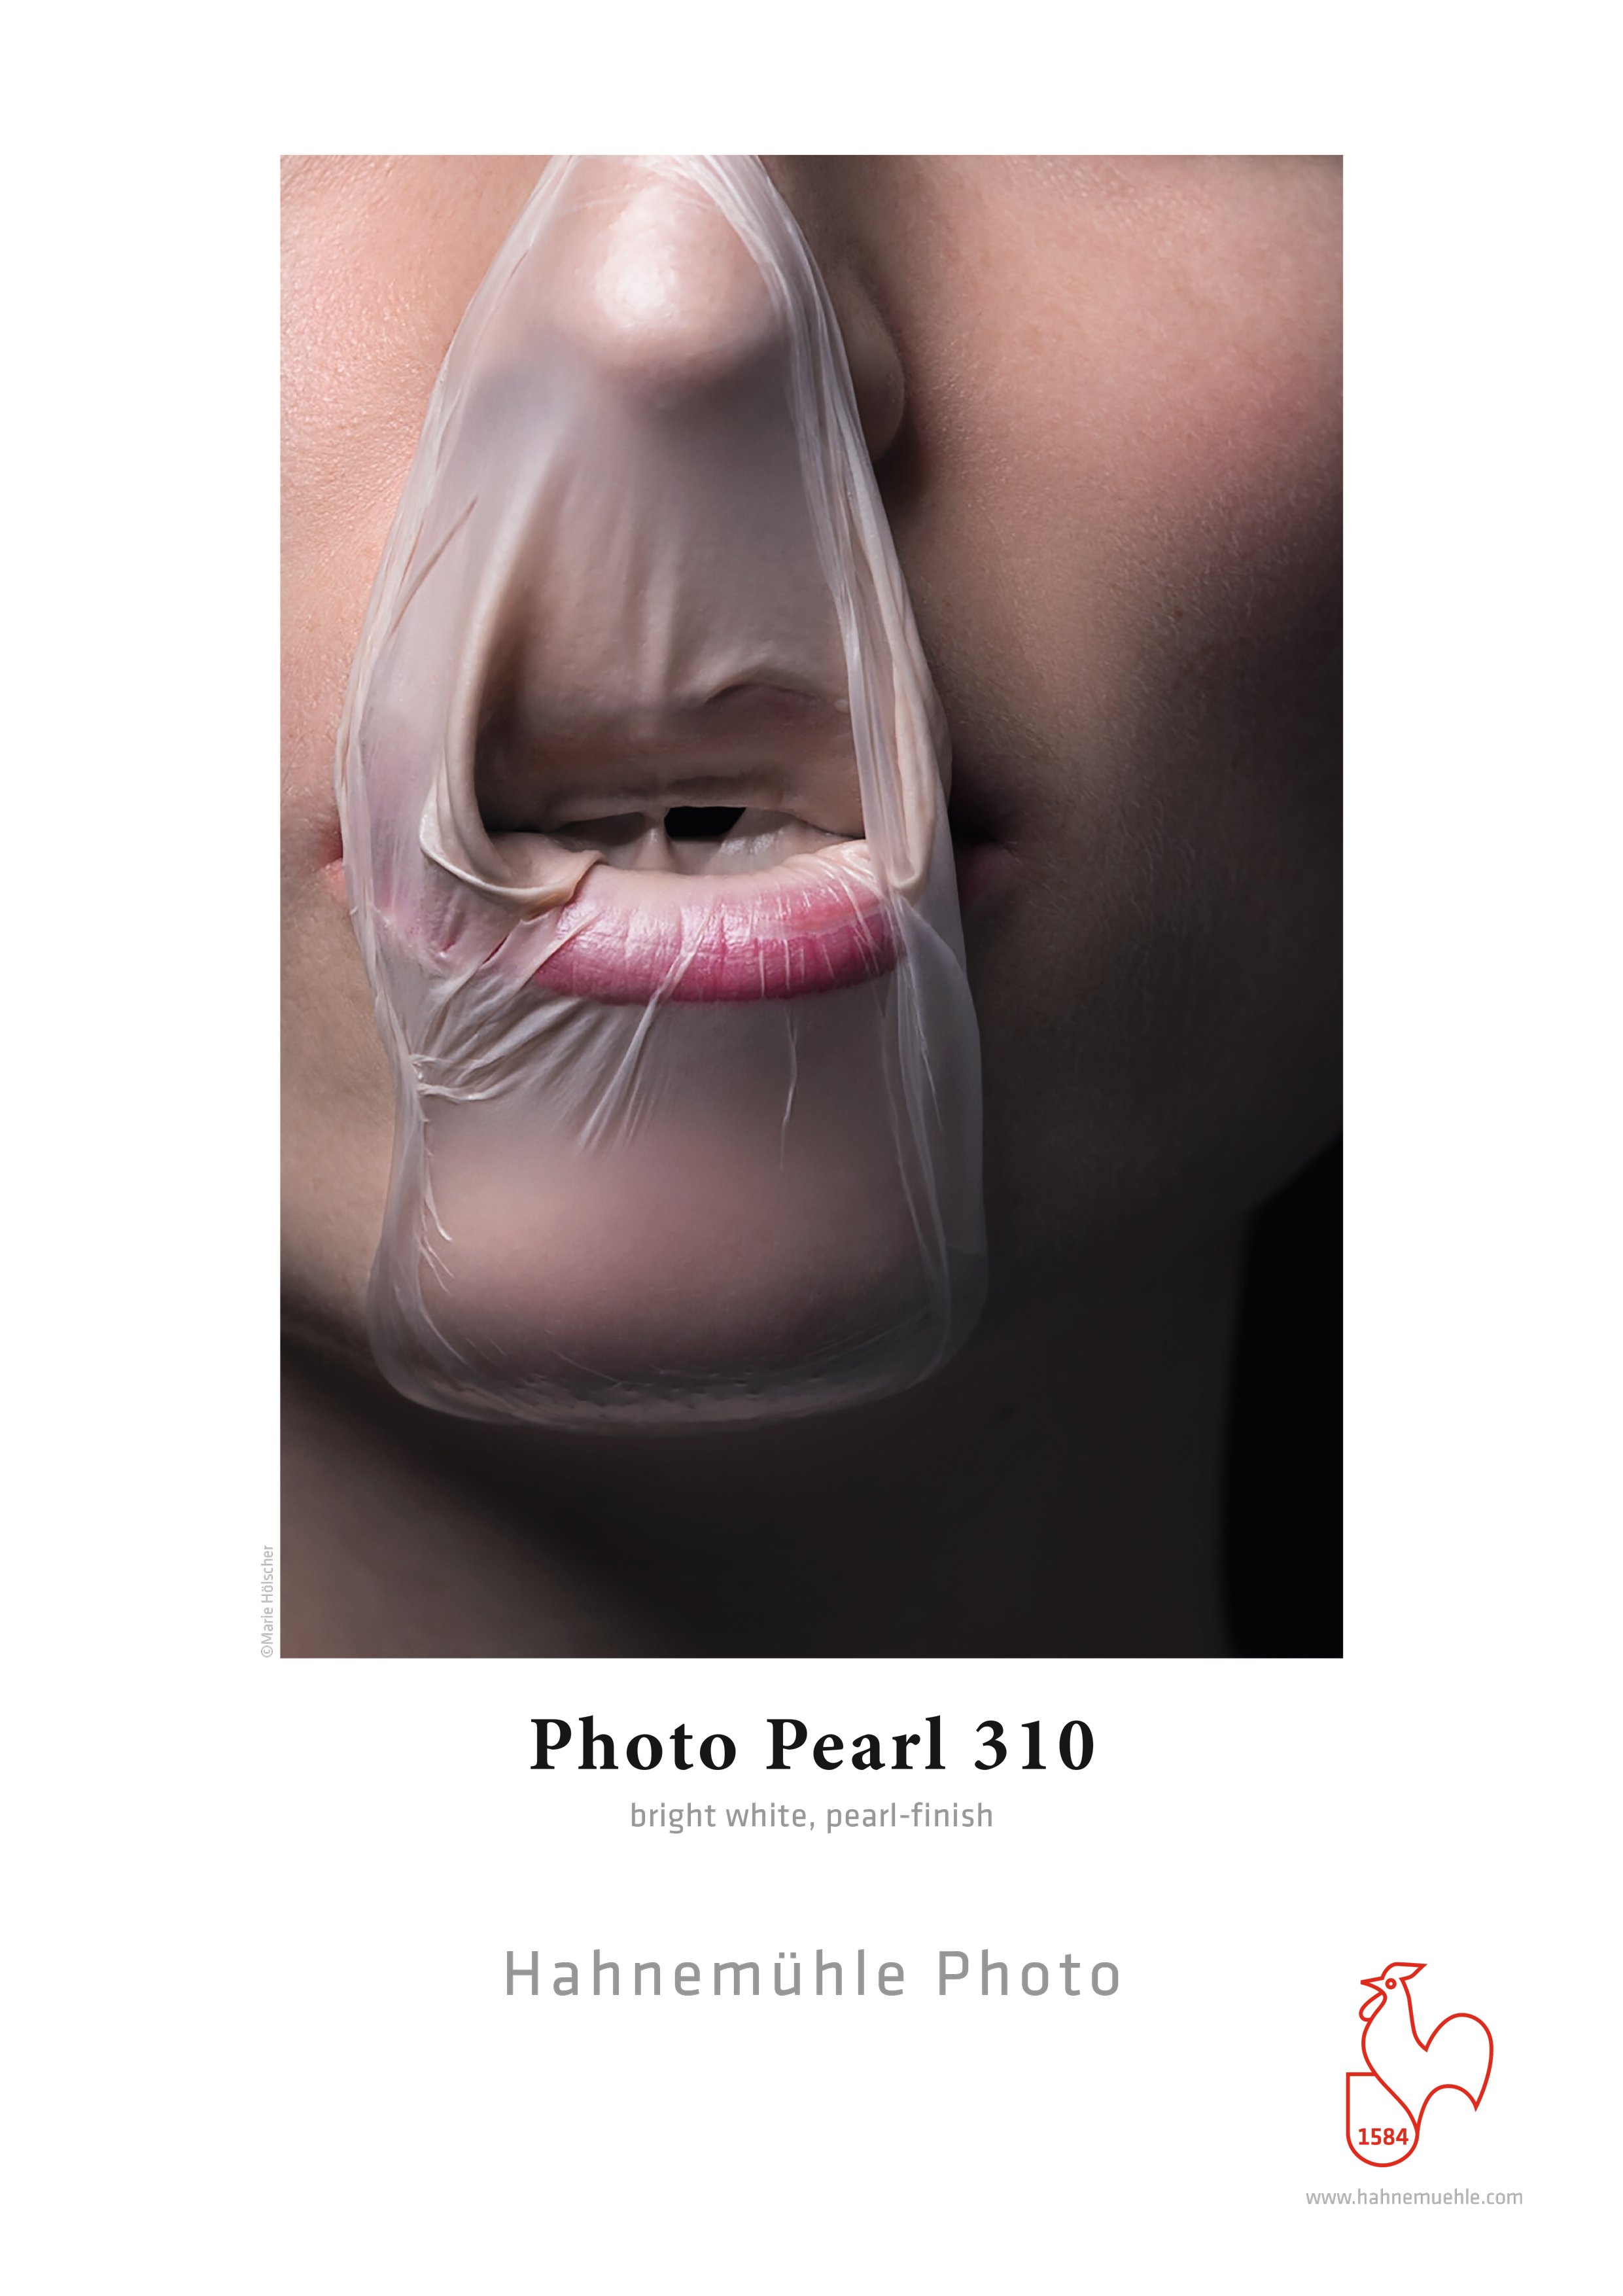 Musterdruck mit Kaugummi um den Mund gedruckt auf Hahnemühle Photo Pearl